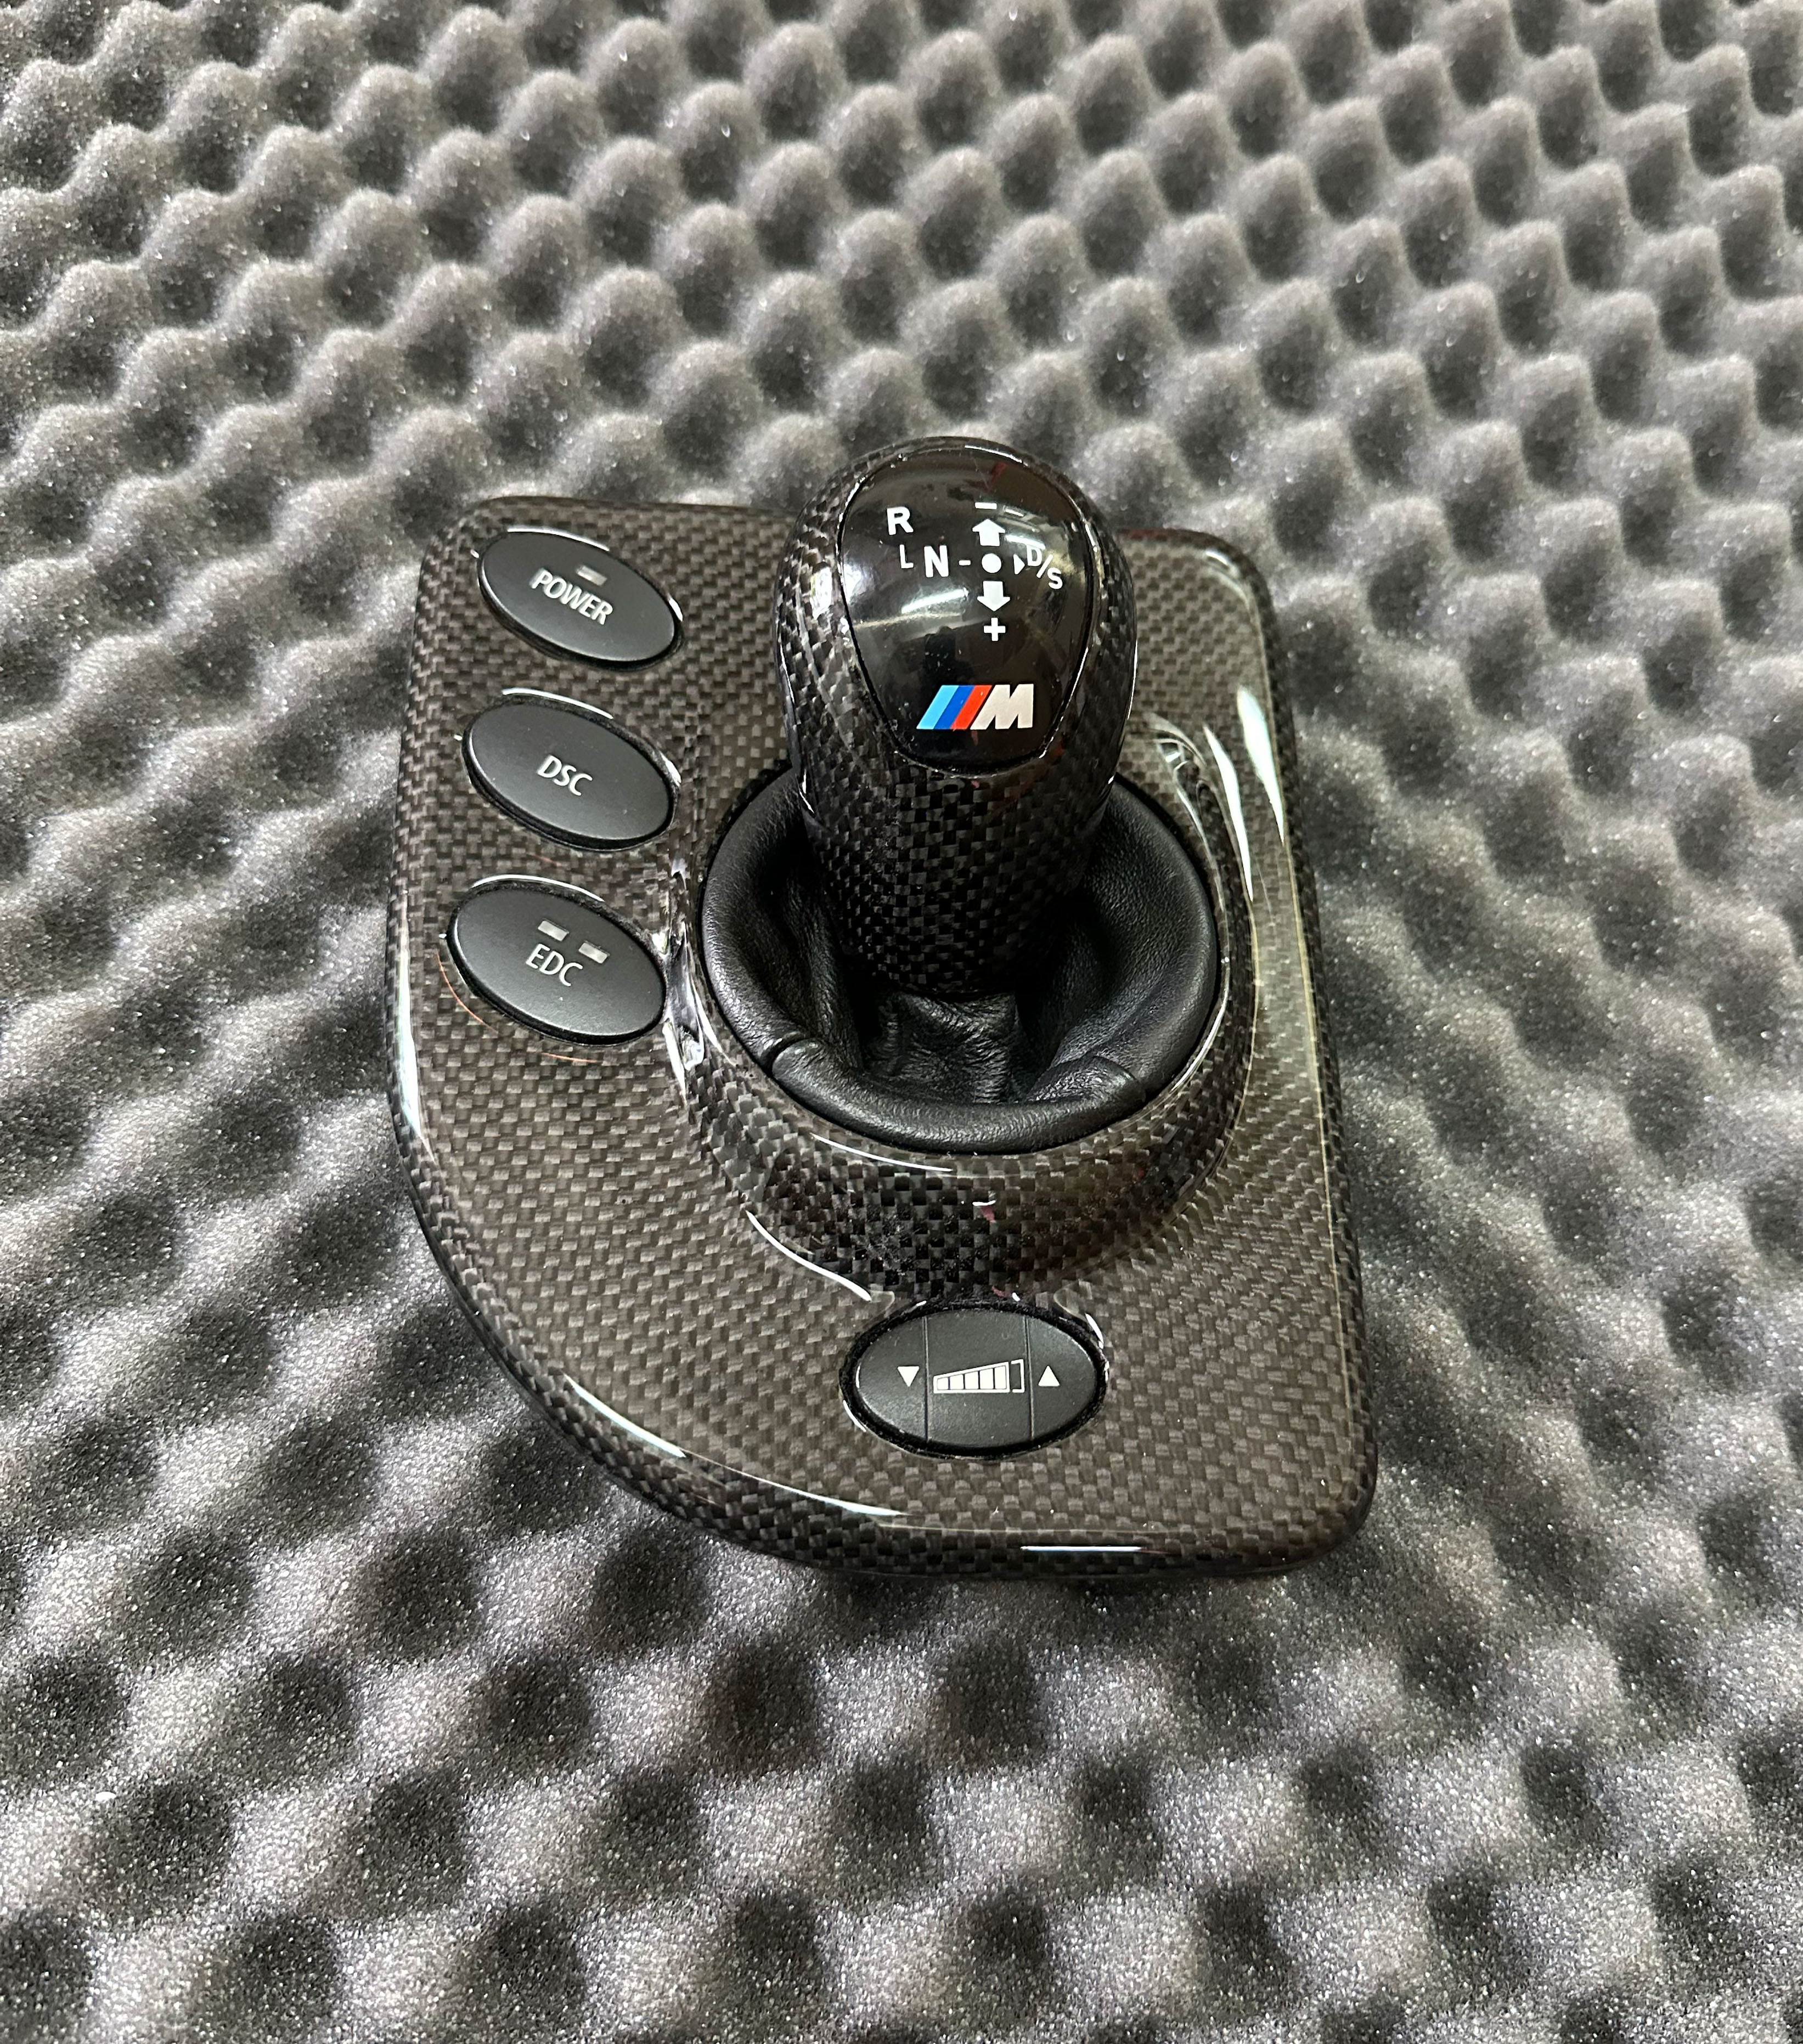 SMG cover gear knob for the BMW E60, E61 M5